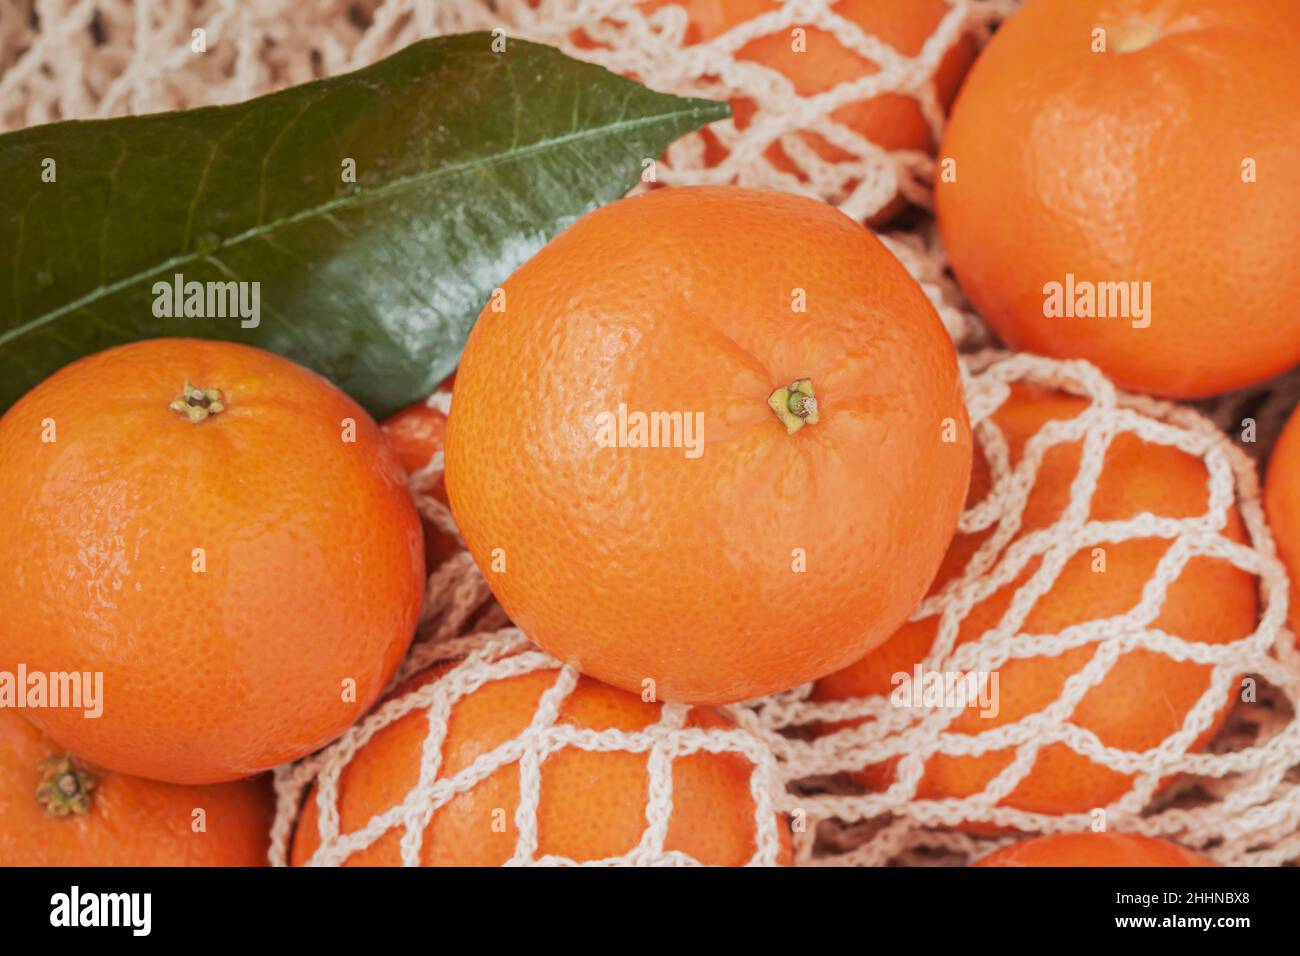 Frutta d'arancia di agrumi con foglie verdi su sacchetto di cotone a rete. Mandarino, arance tangerine. Stile di vita sano, concetto di disintossicazione Foto Stock